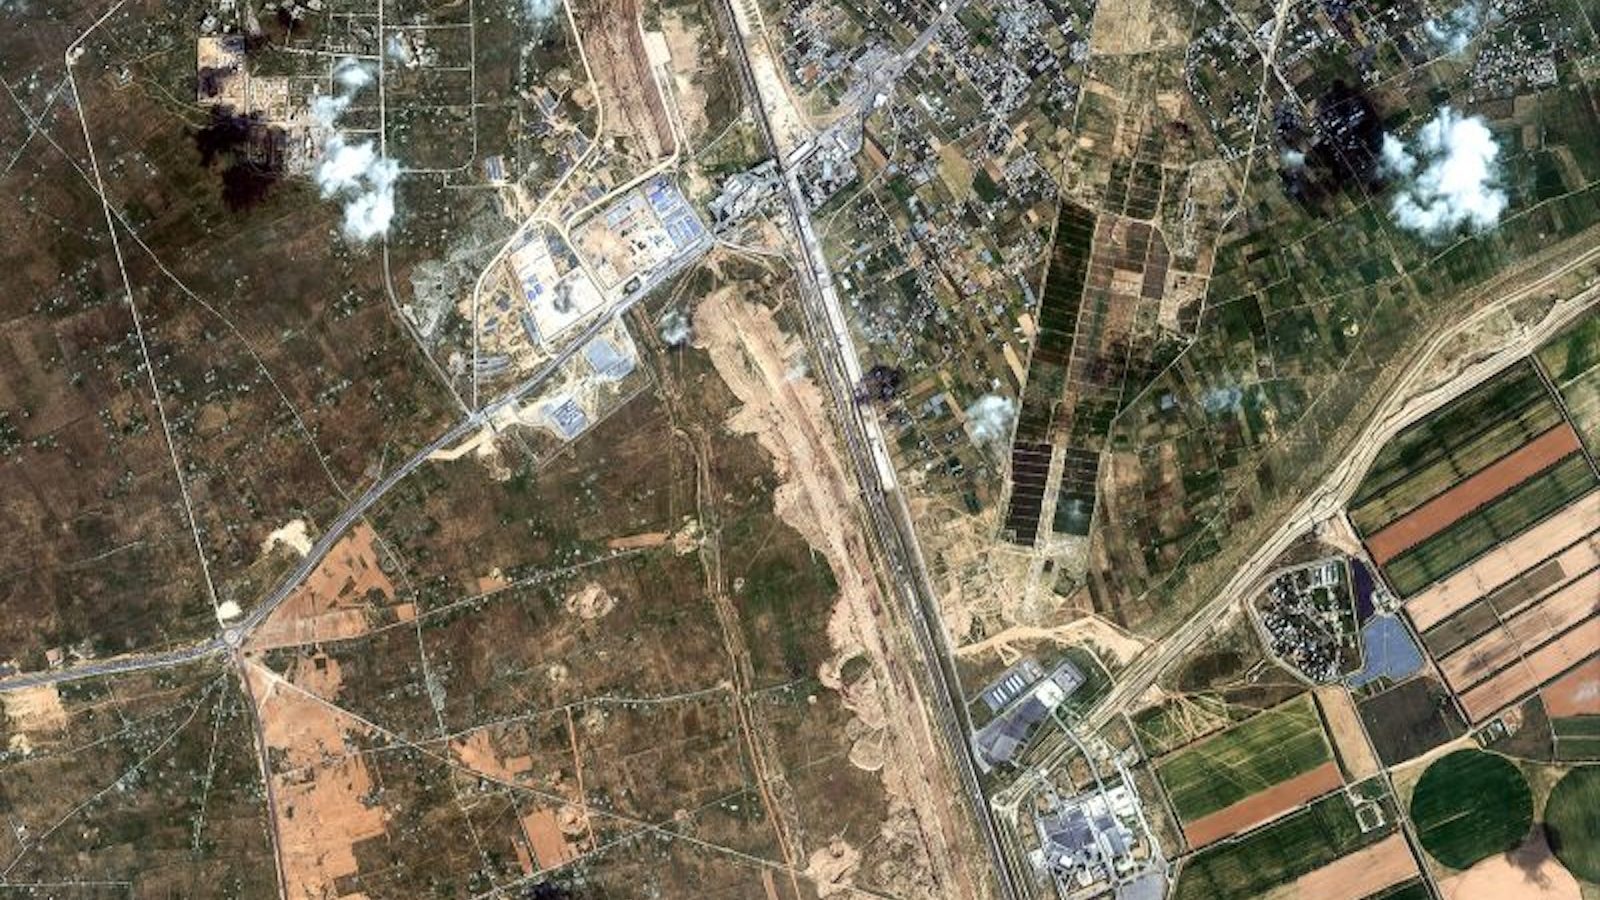 Mesir sedang membangun zona penyangga baru selebar lebih dari 3 kilometer di perbatasan dengan Gaza, menurut citra satelit